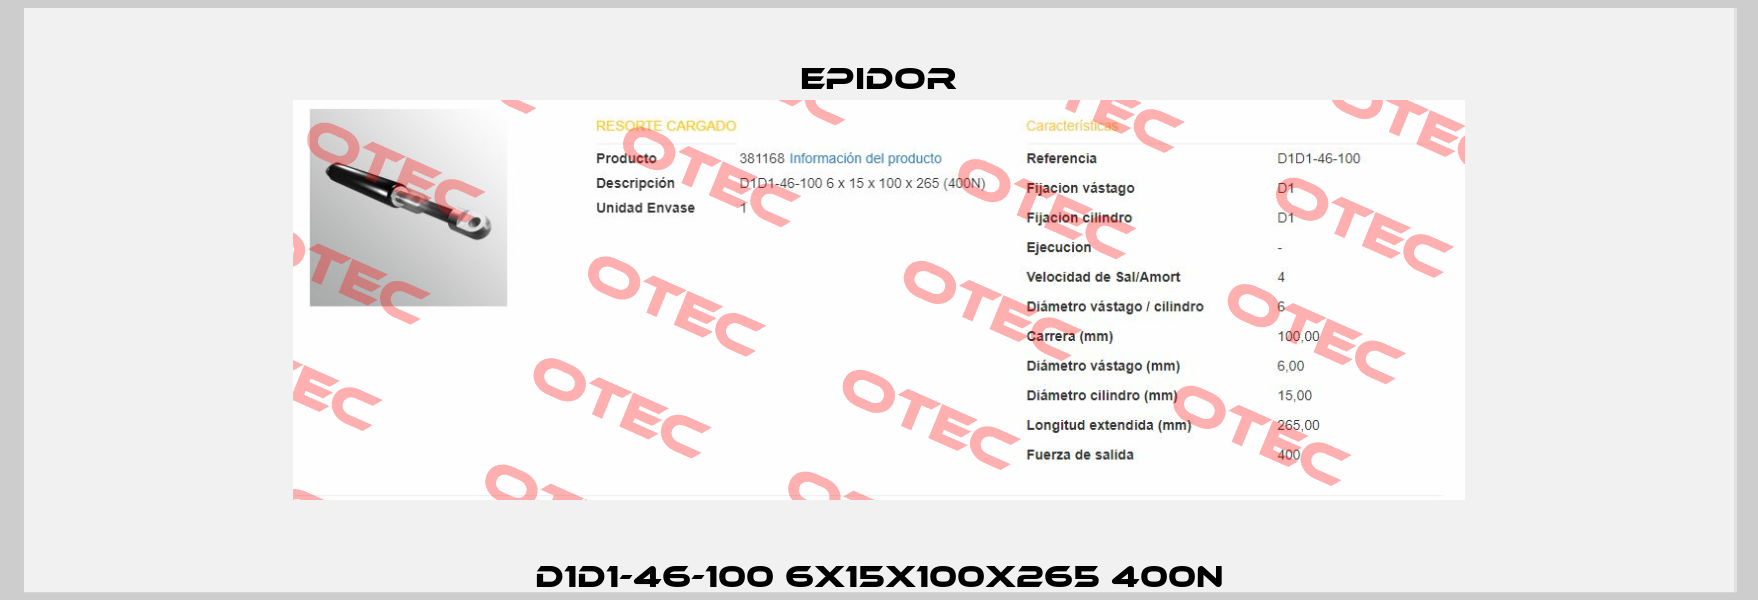 D1D1-46-100 6X15X100X265 400N Epidor